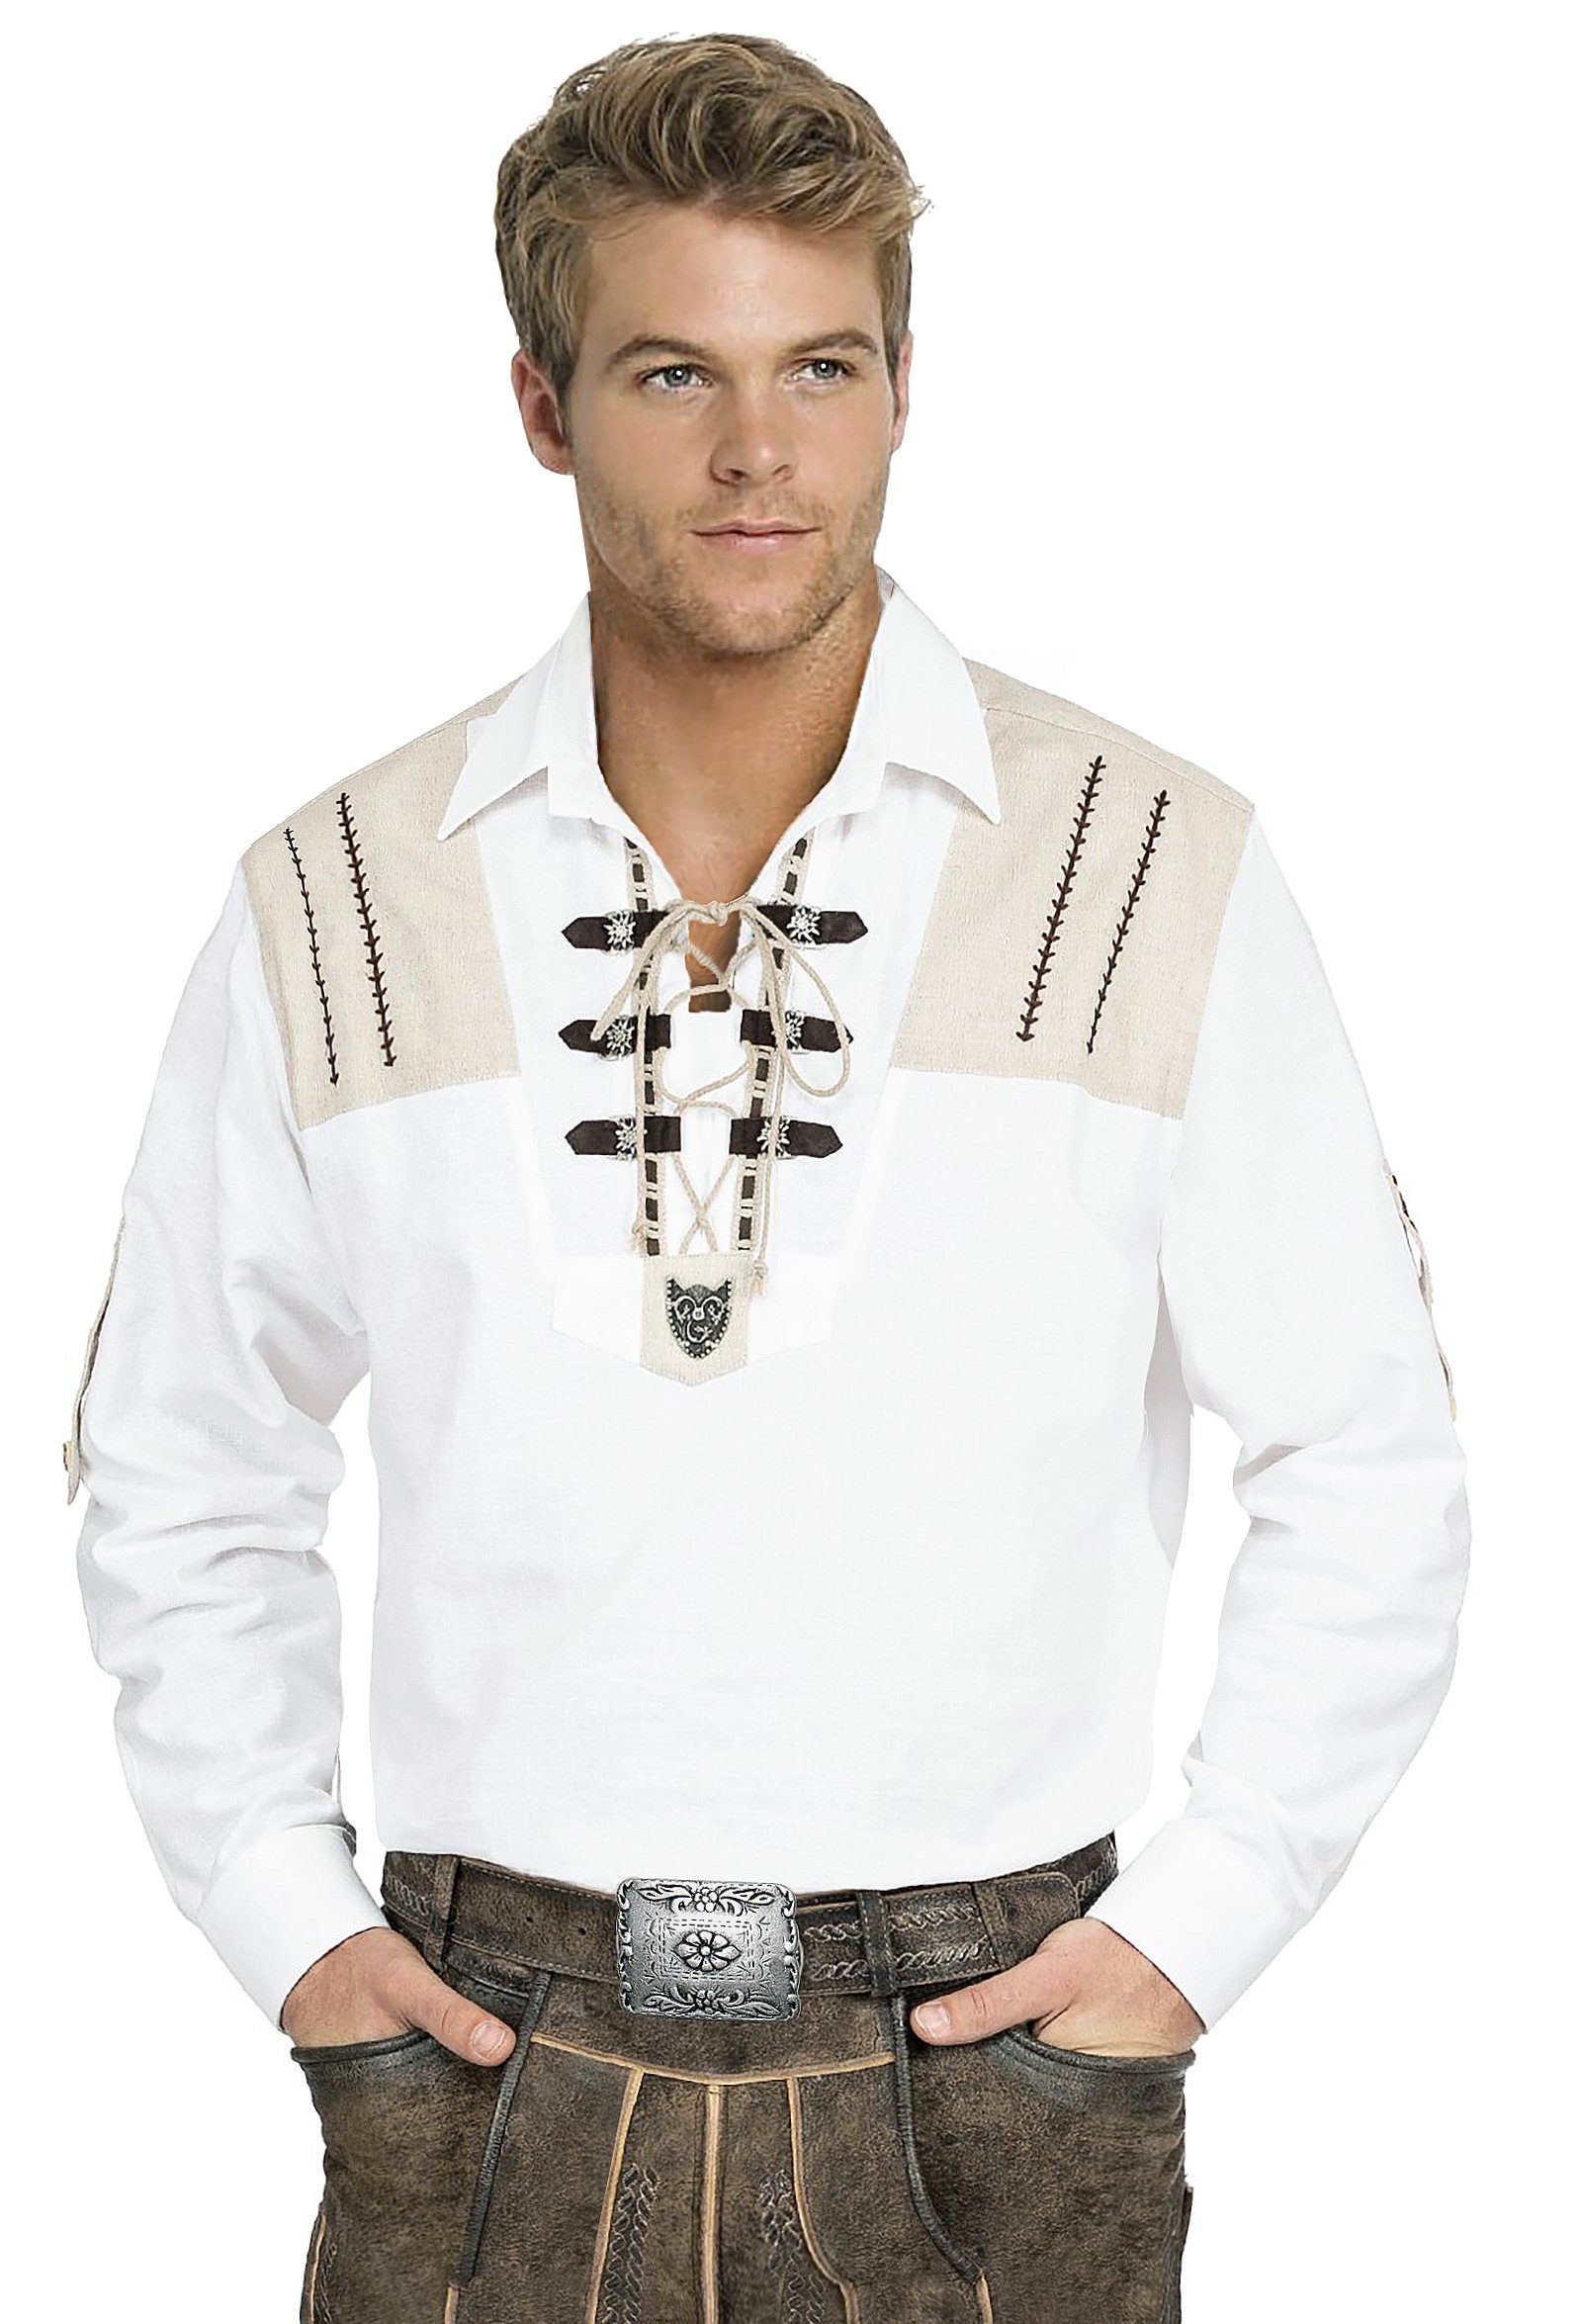 Moschen-Bayern Trachtenhemd Trachtenhemd Herren Wiesn-Hemd zur Lederhose mit Edelweiß - Herrenhemd Langarm + Kurzarm Krempelarm Weiß-Beige | Trachtenhemden